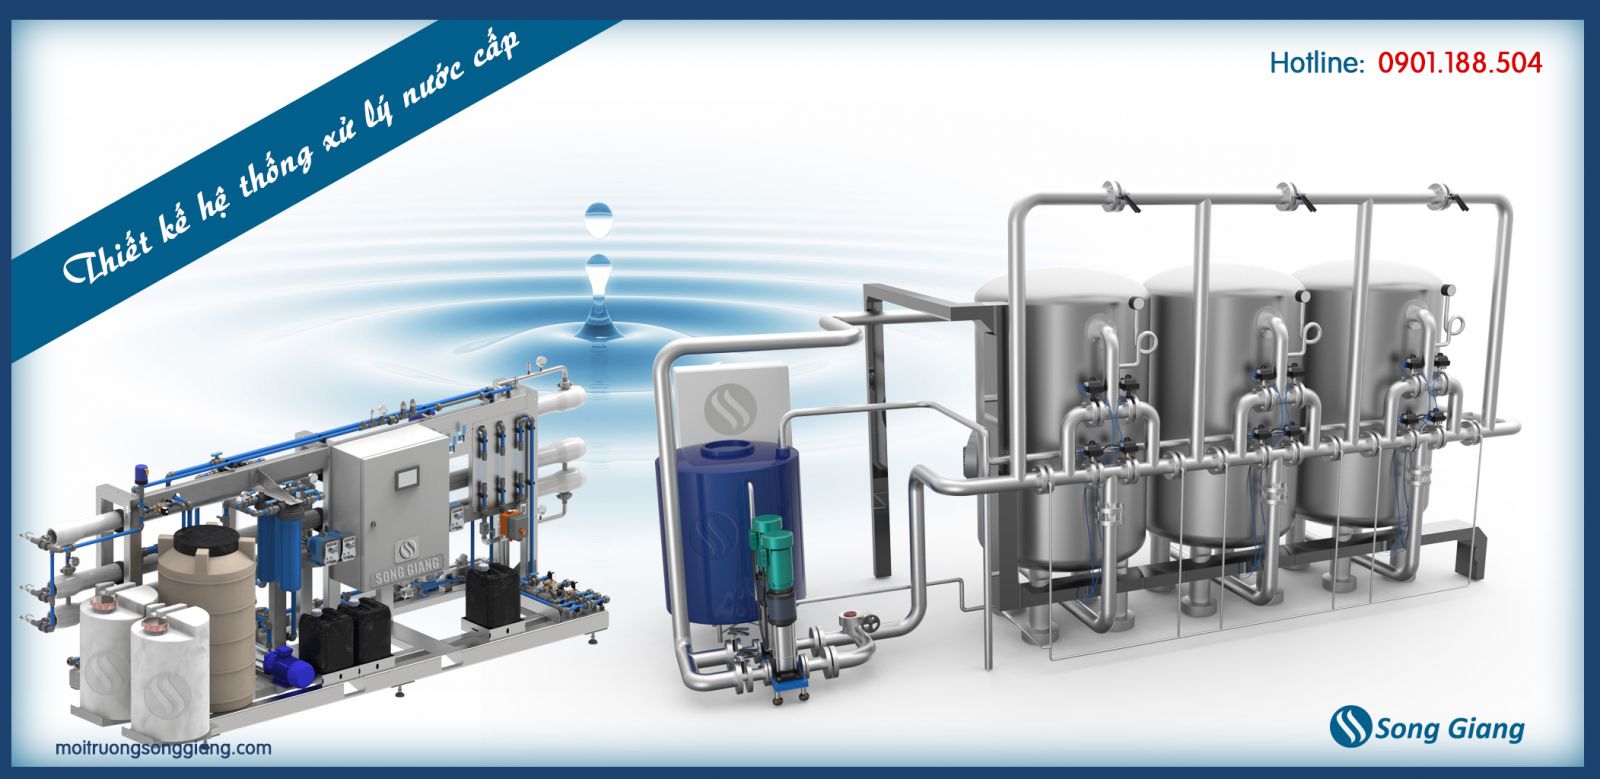 Thiết kế hệ thống xử lý nước cấp